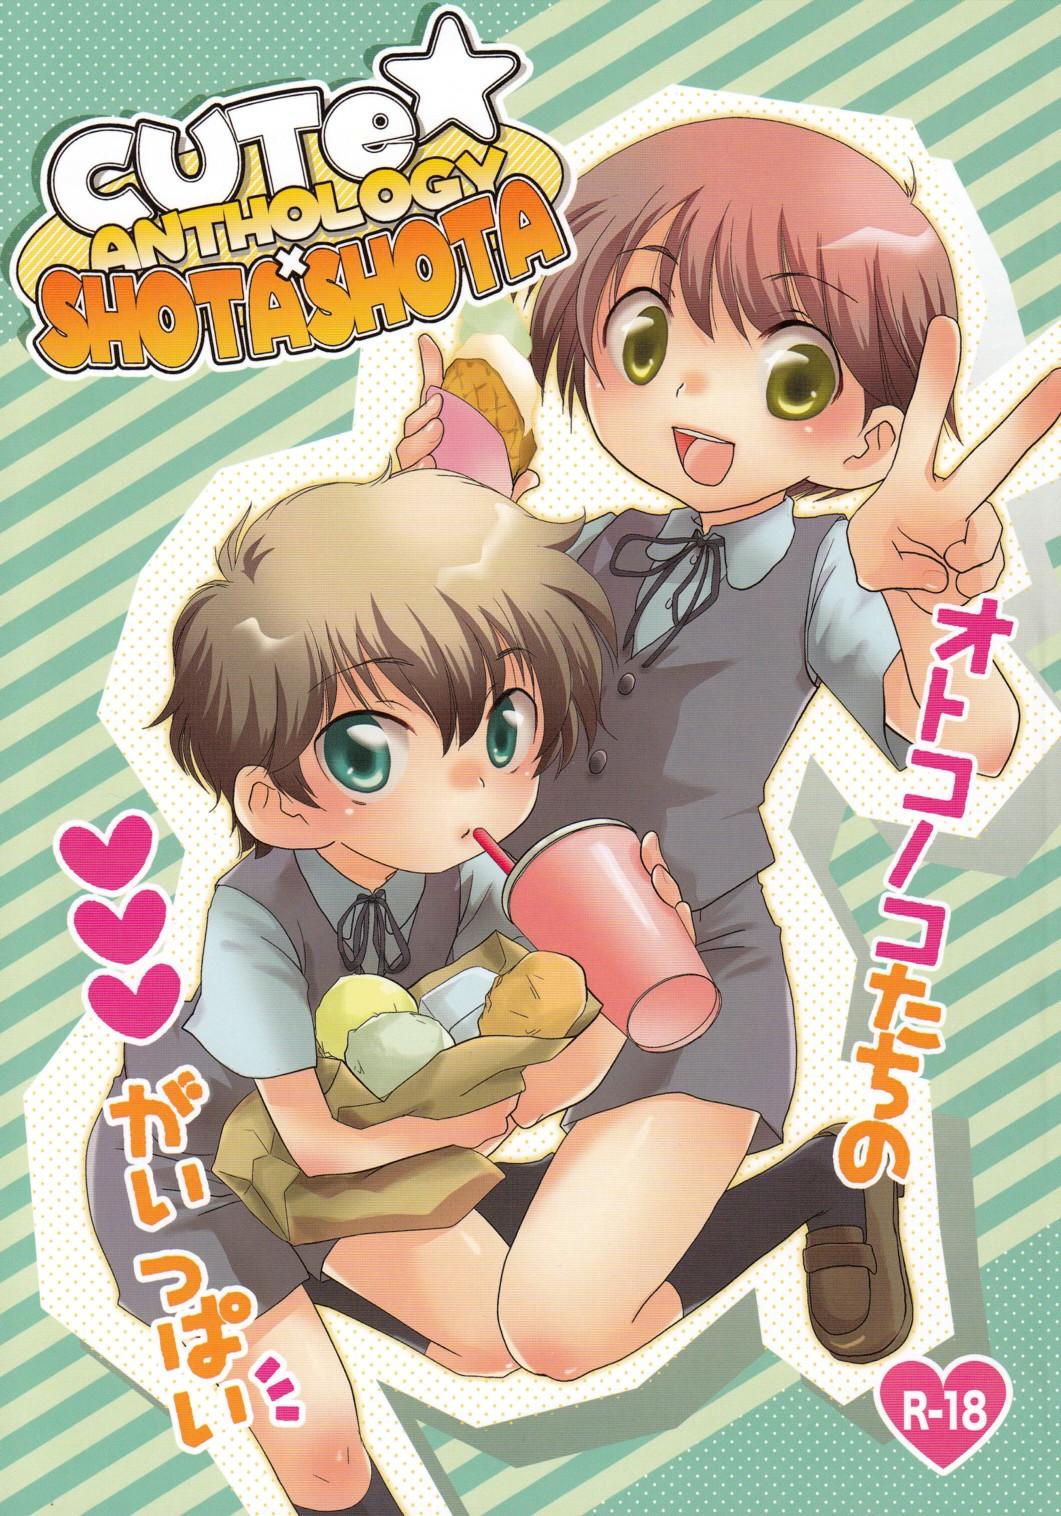 Big Dicks Cute Anthology Shota x Shota Edging - Picture 1